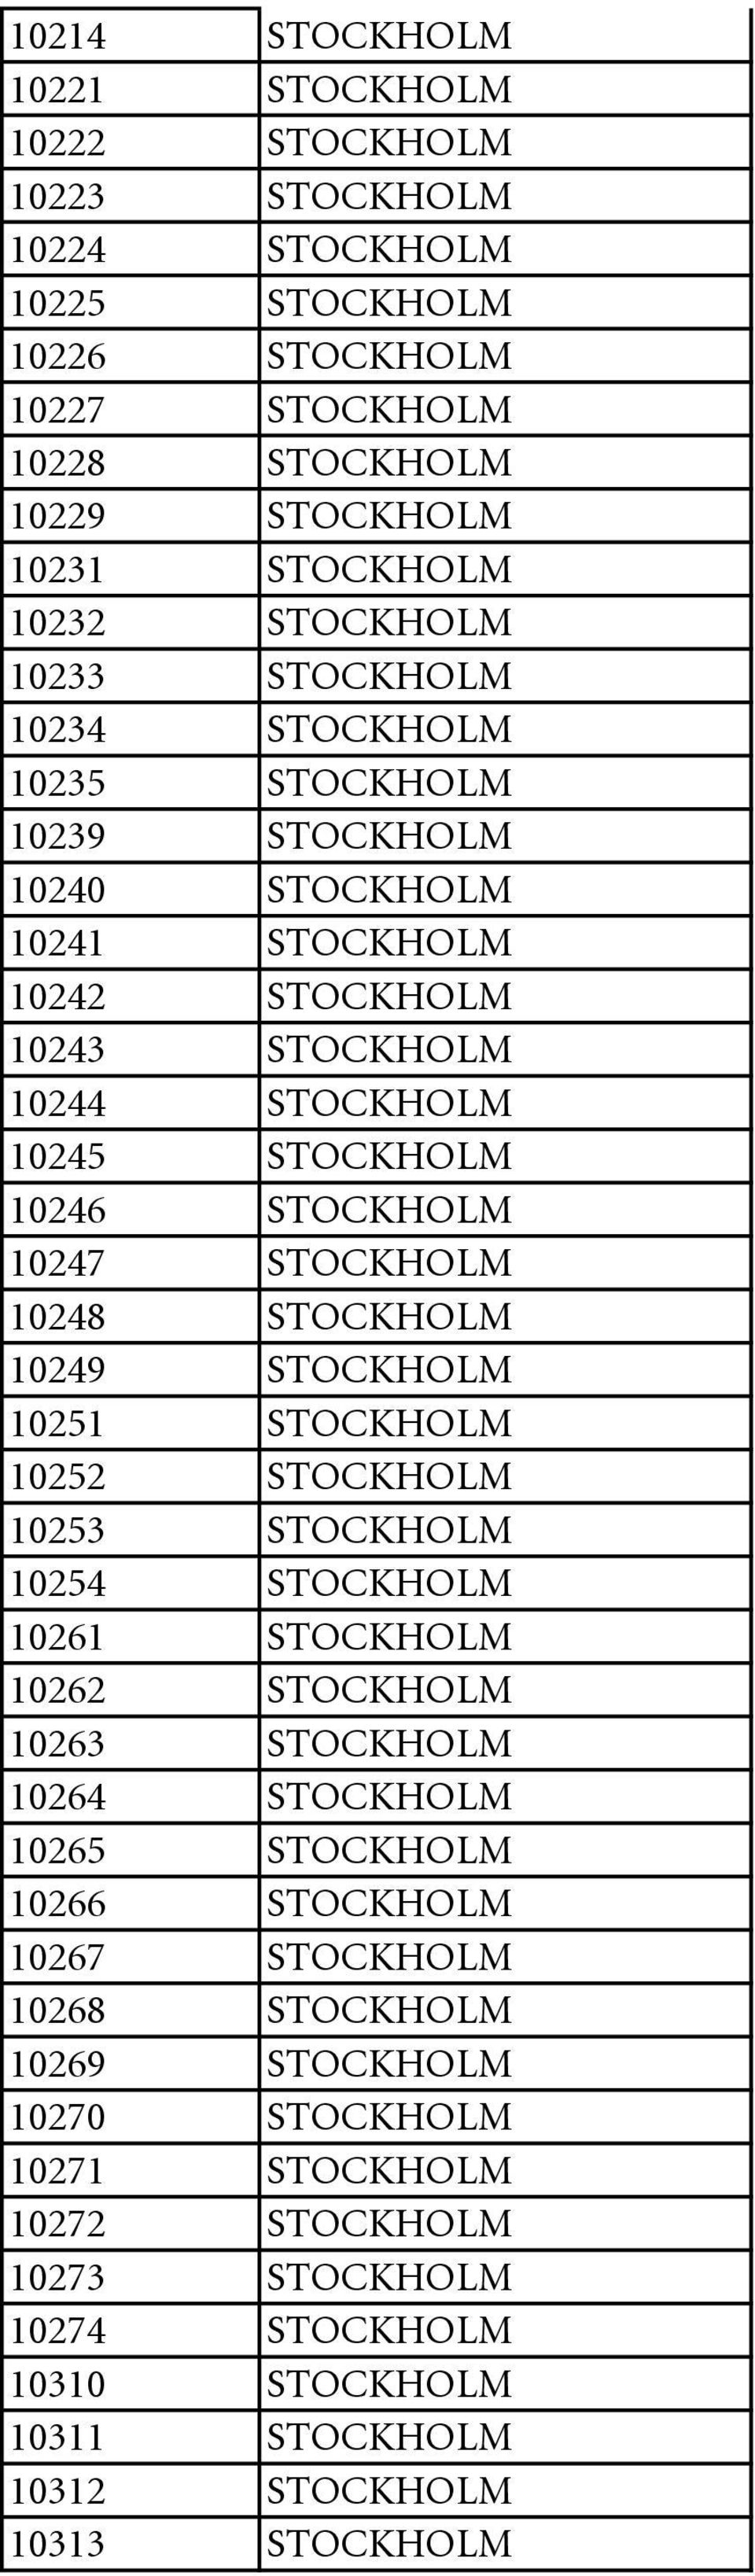 10248 STOCKHOLM 10249 STOCKHOLM 10251 STOCKHOLM 10252 STOCKHOLM 10253 STOCKHOLM 10254 STOCKHOLM 10261 STOCKHOLM 10262 STOCKHOLM 10263 STOCKHOLM 10264 STOCKHOLM 10265 STOCKHOLM 10266 STOCKHOLM